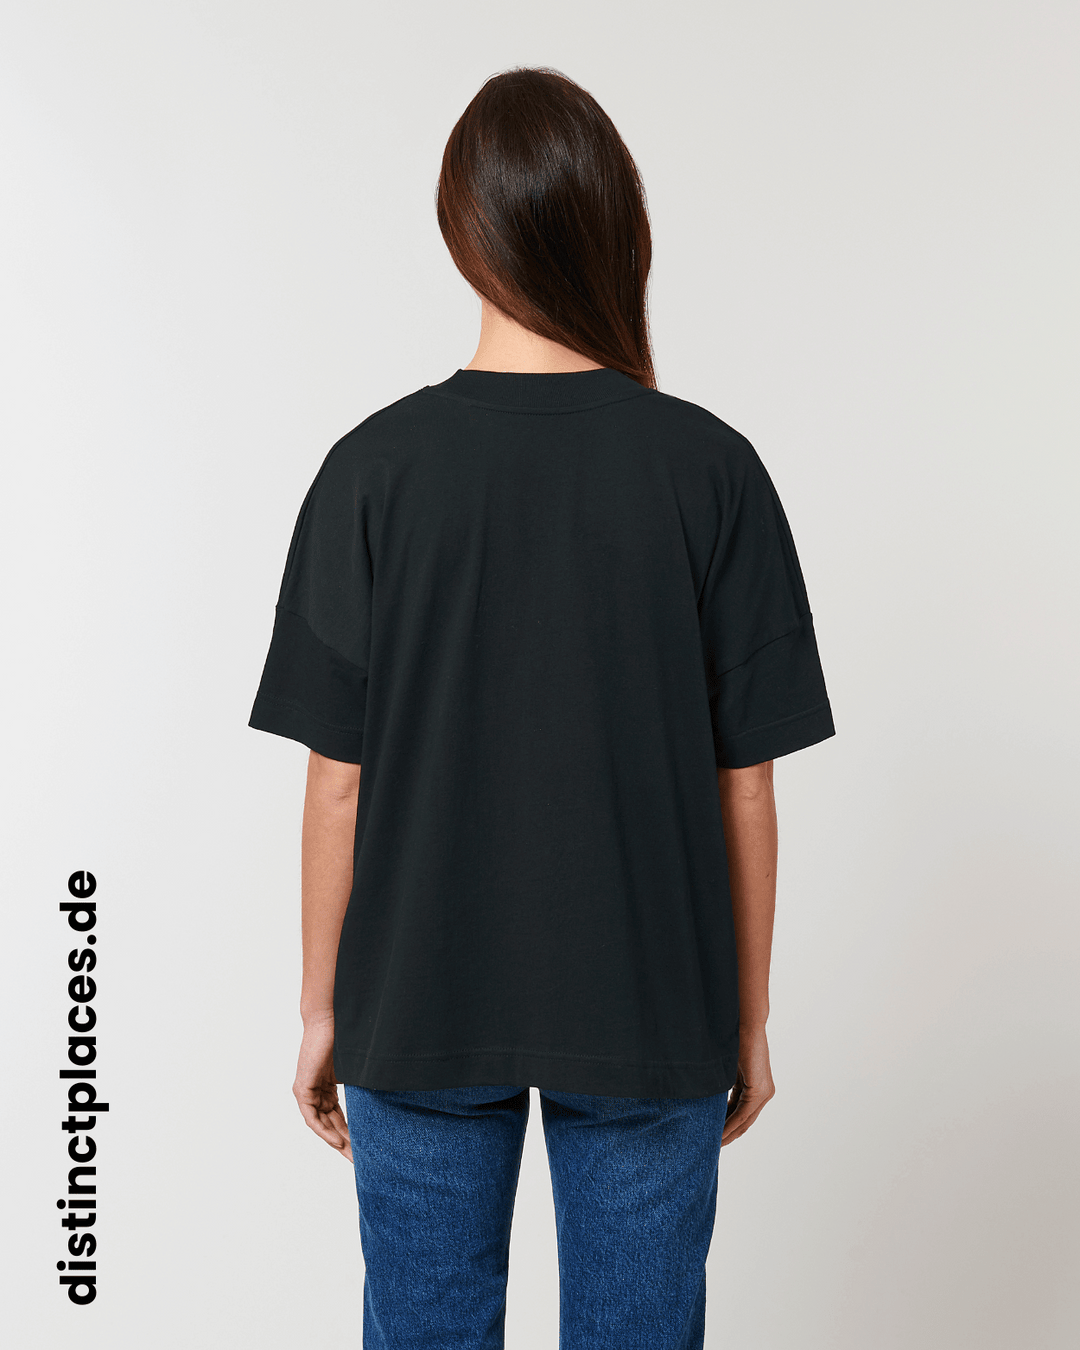 Frau von hinten trägt schwarzes fairtrade, vegan und bio-baumwoll Oversized T-Shirt mit einem minimalistischem weißen Logo, beziehungsweise Schriftzug für Saarbrücken